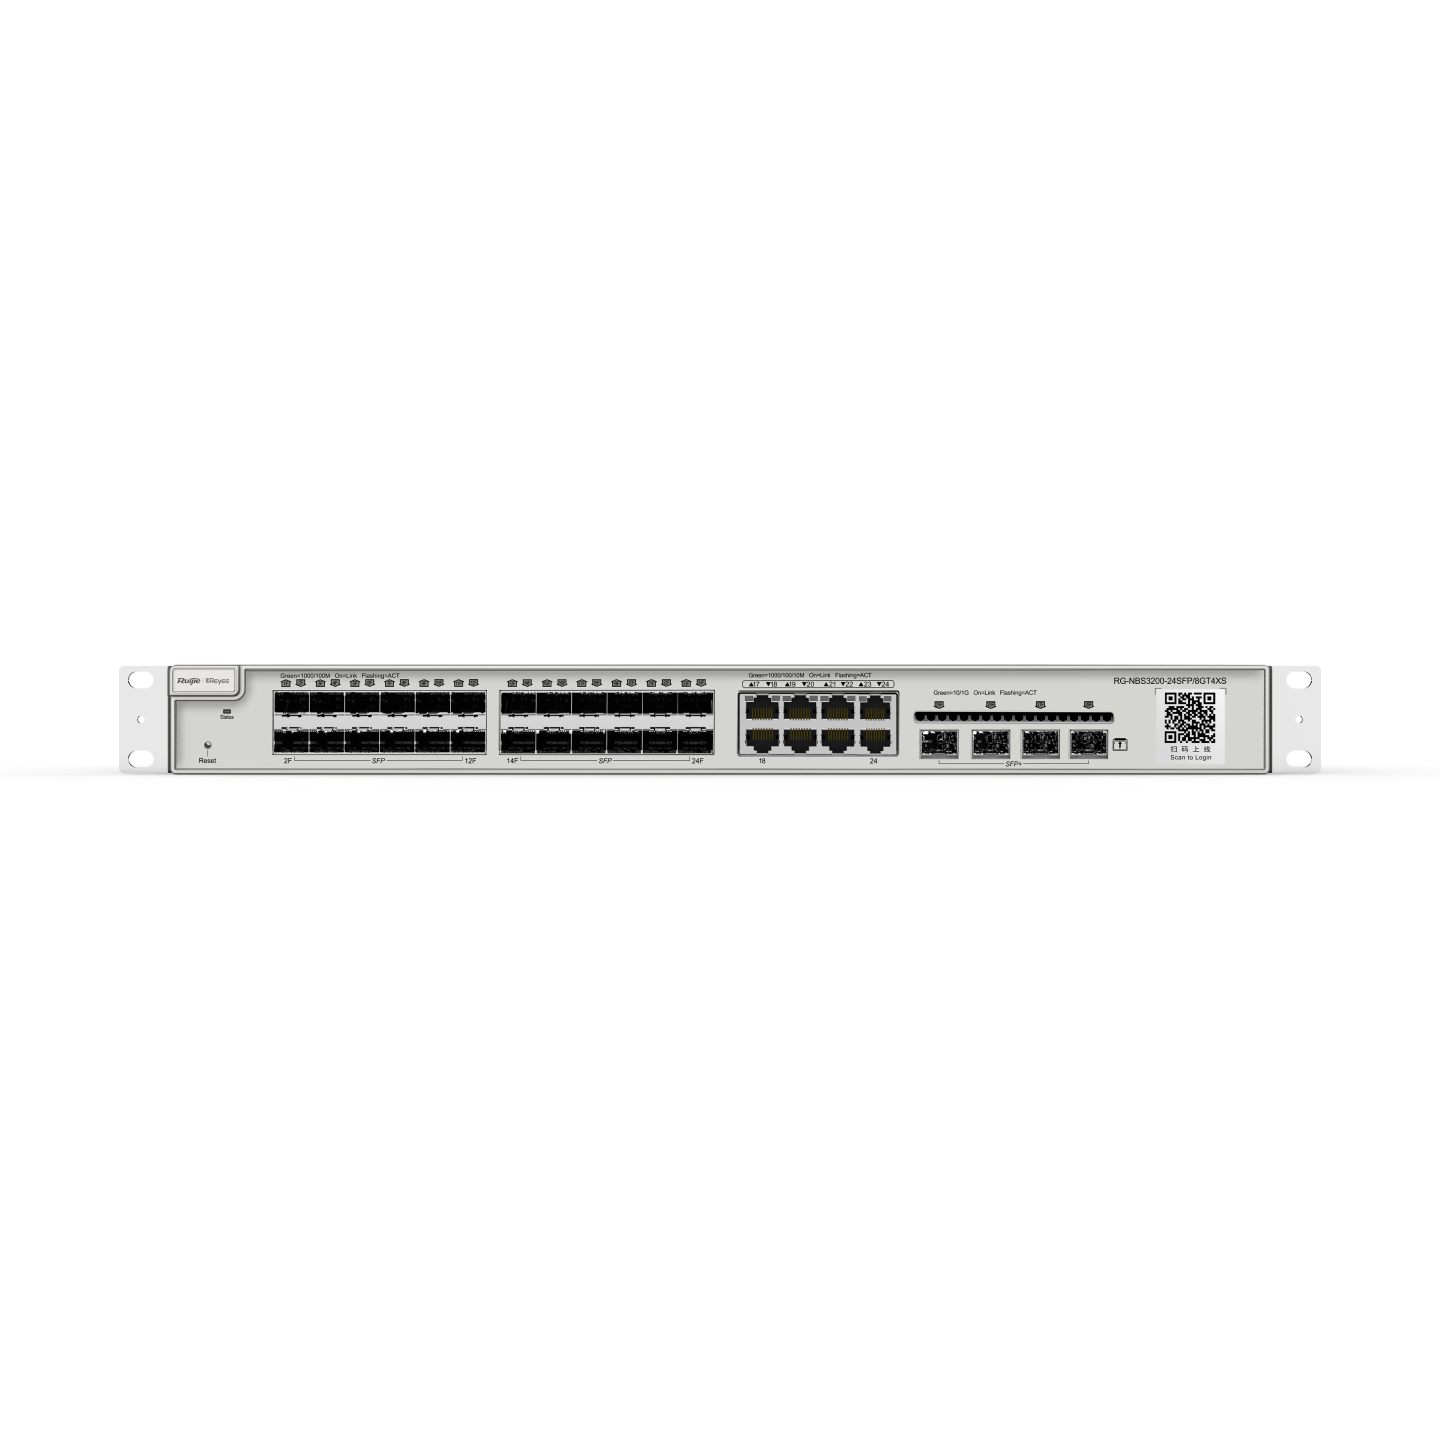 Ruijie Reyee RG-NBS3200-24SFP/8GT4XS, 24-Port Gigabit SFP Managed Switch